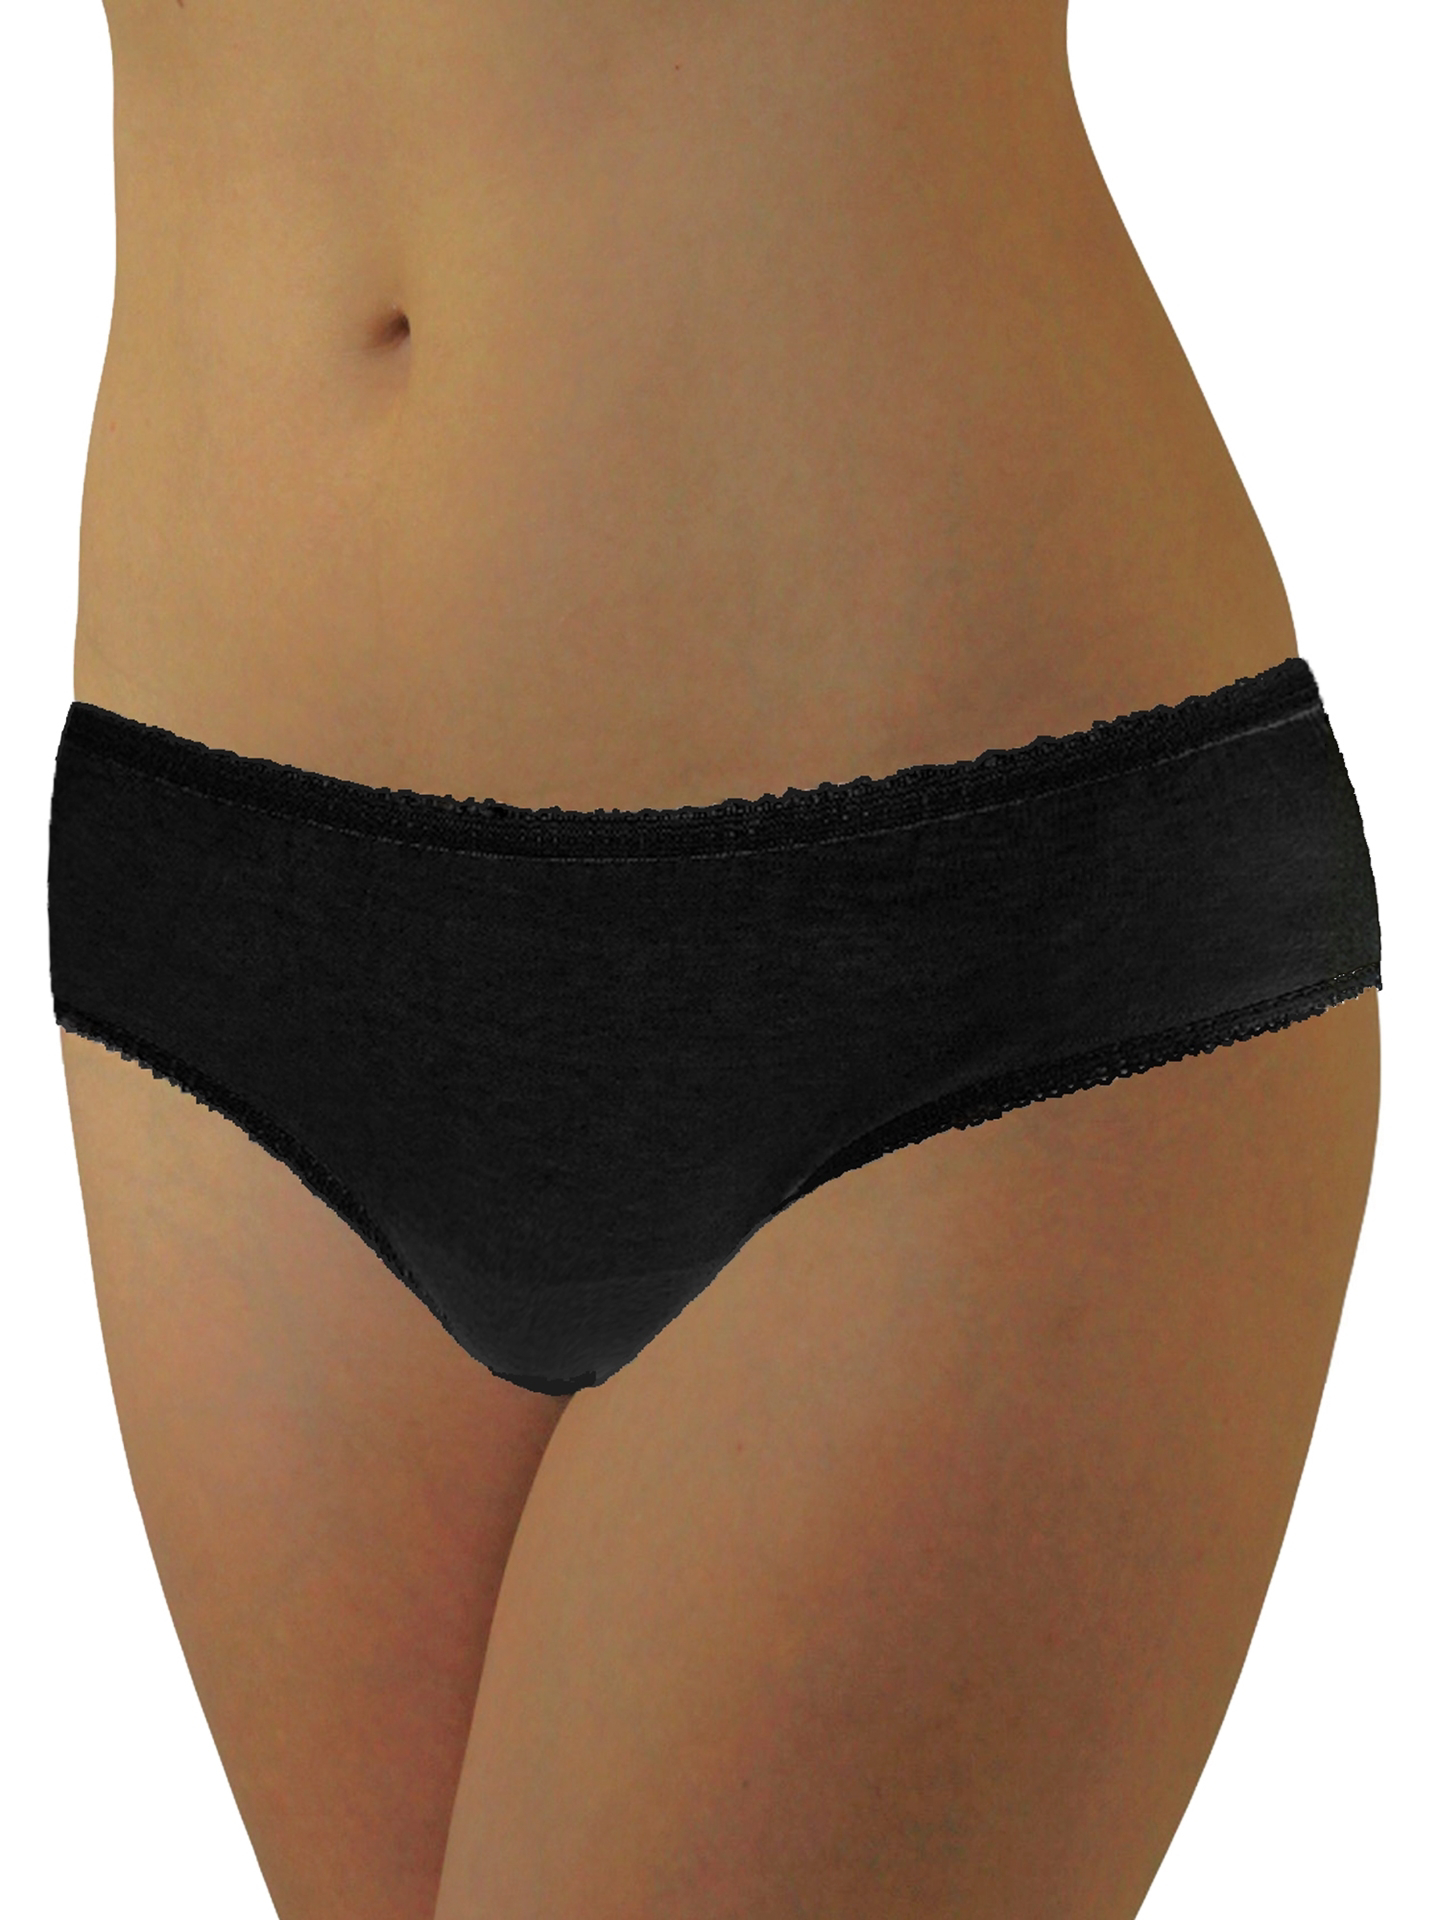 Kiplyki Wholesale Women Sexy Lingerie G-string Briefs Underwear